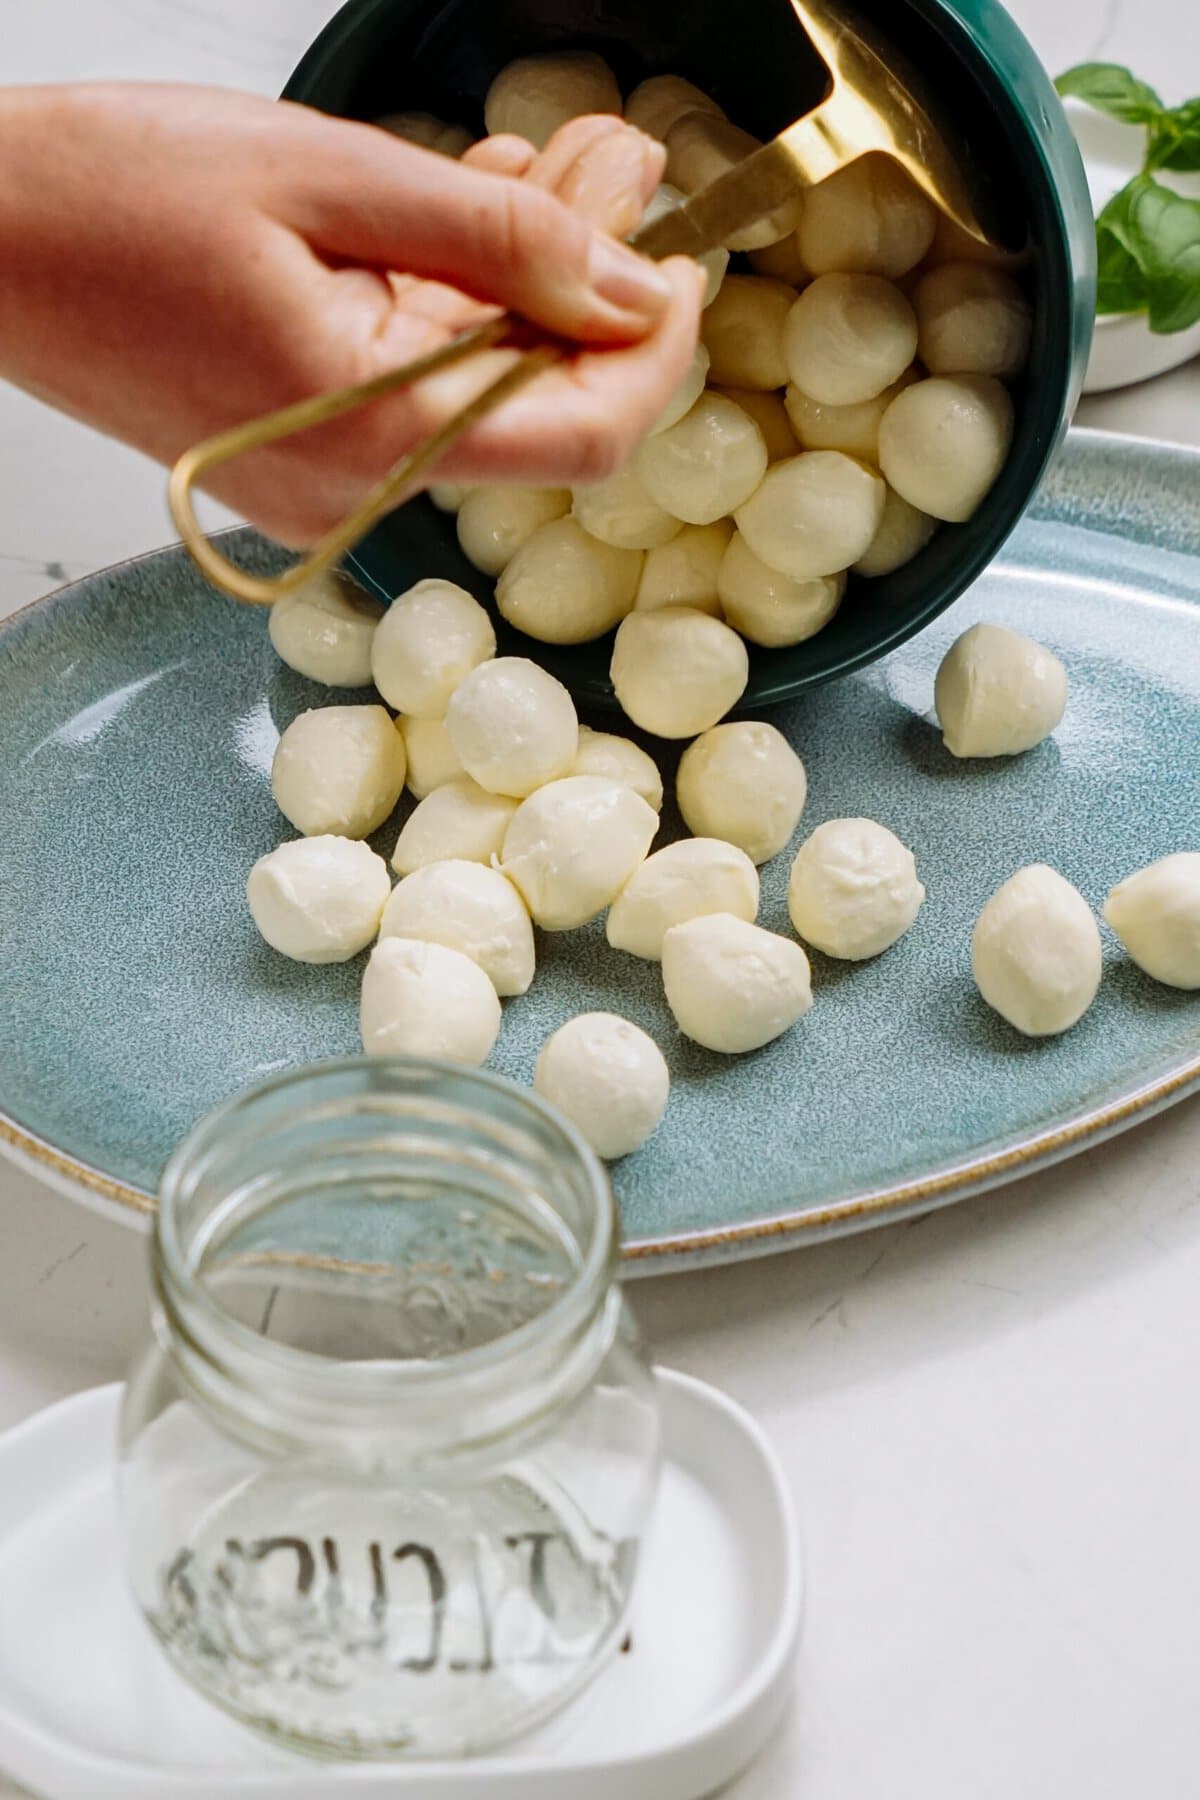 mozzarella balls being poured onto a plate